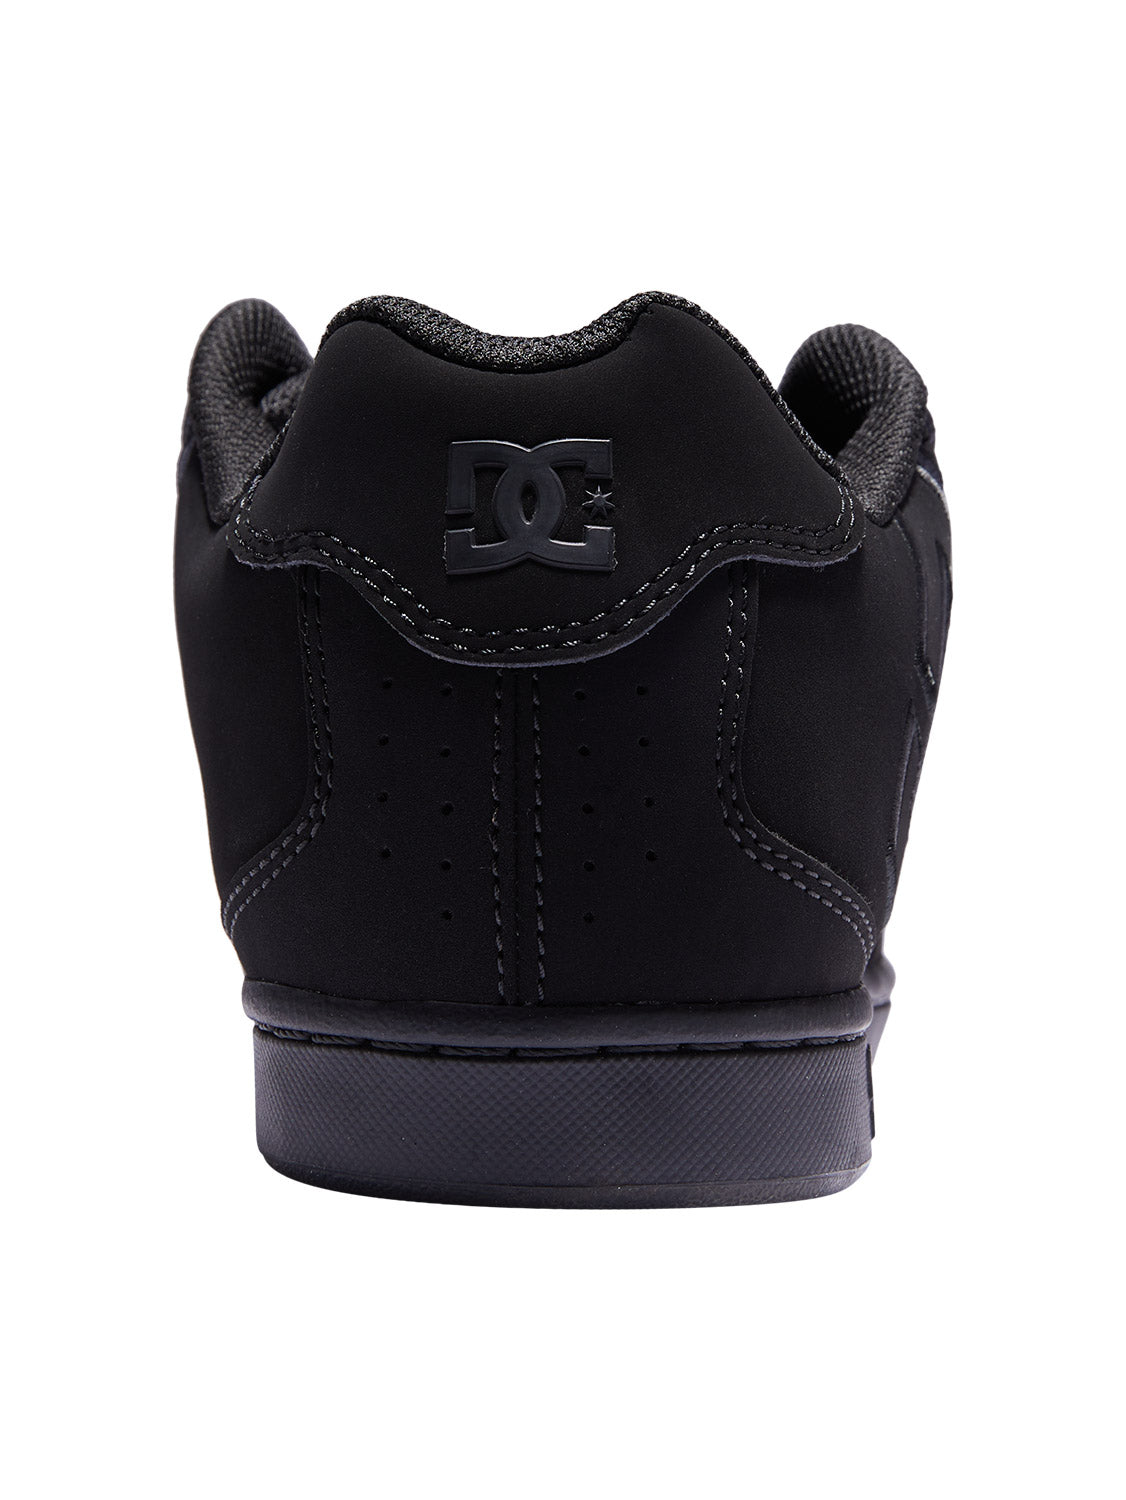 DC Men's Net Skate Shoe